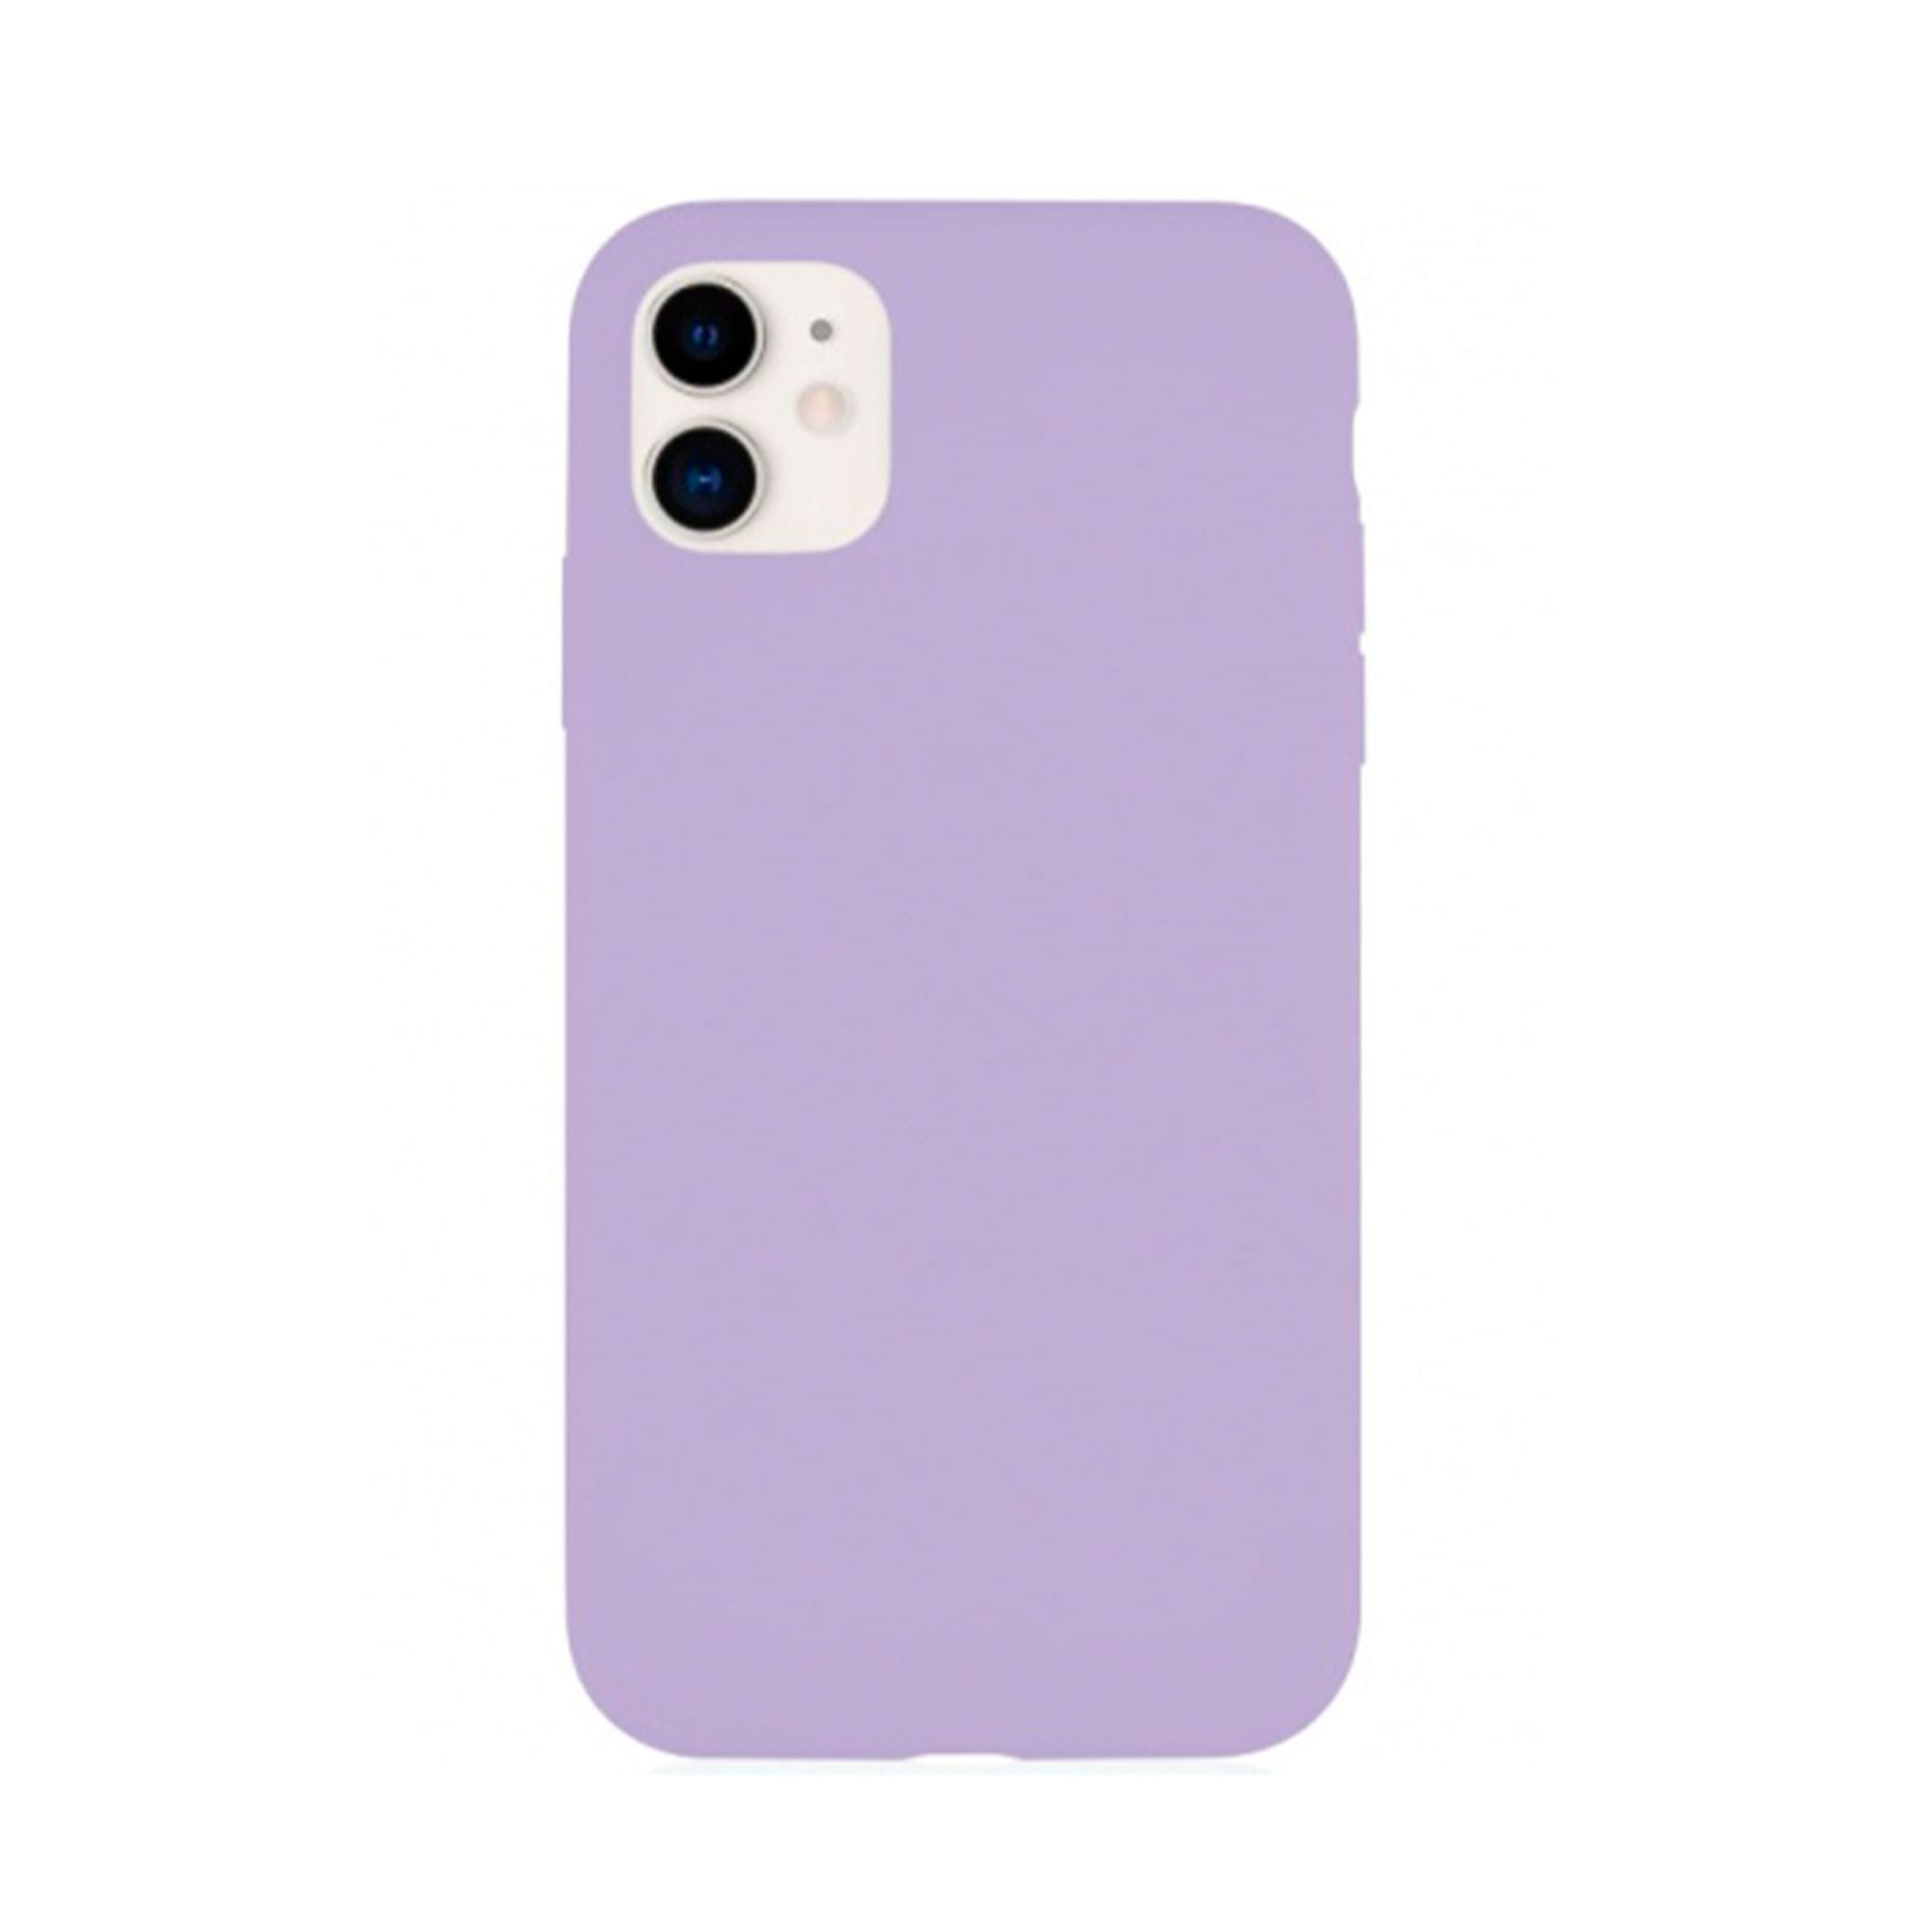 Фото — Чехол защитный VLP Silicone Сase для iPhone 11, фиолетовый